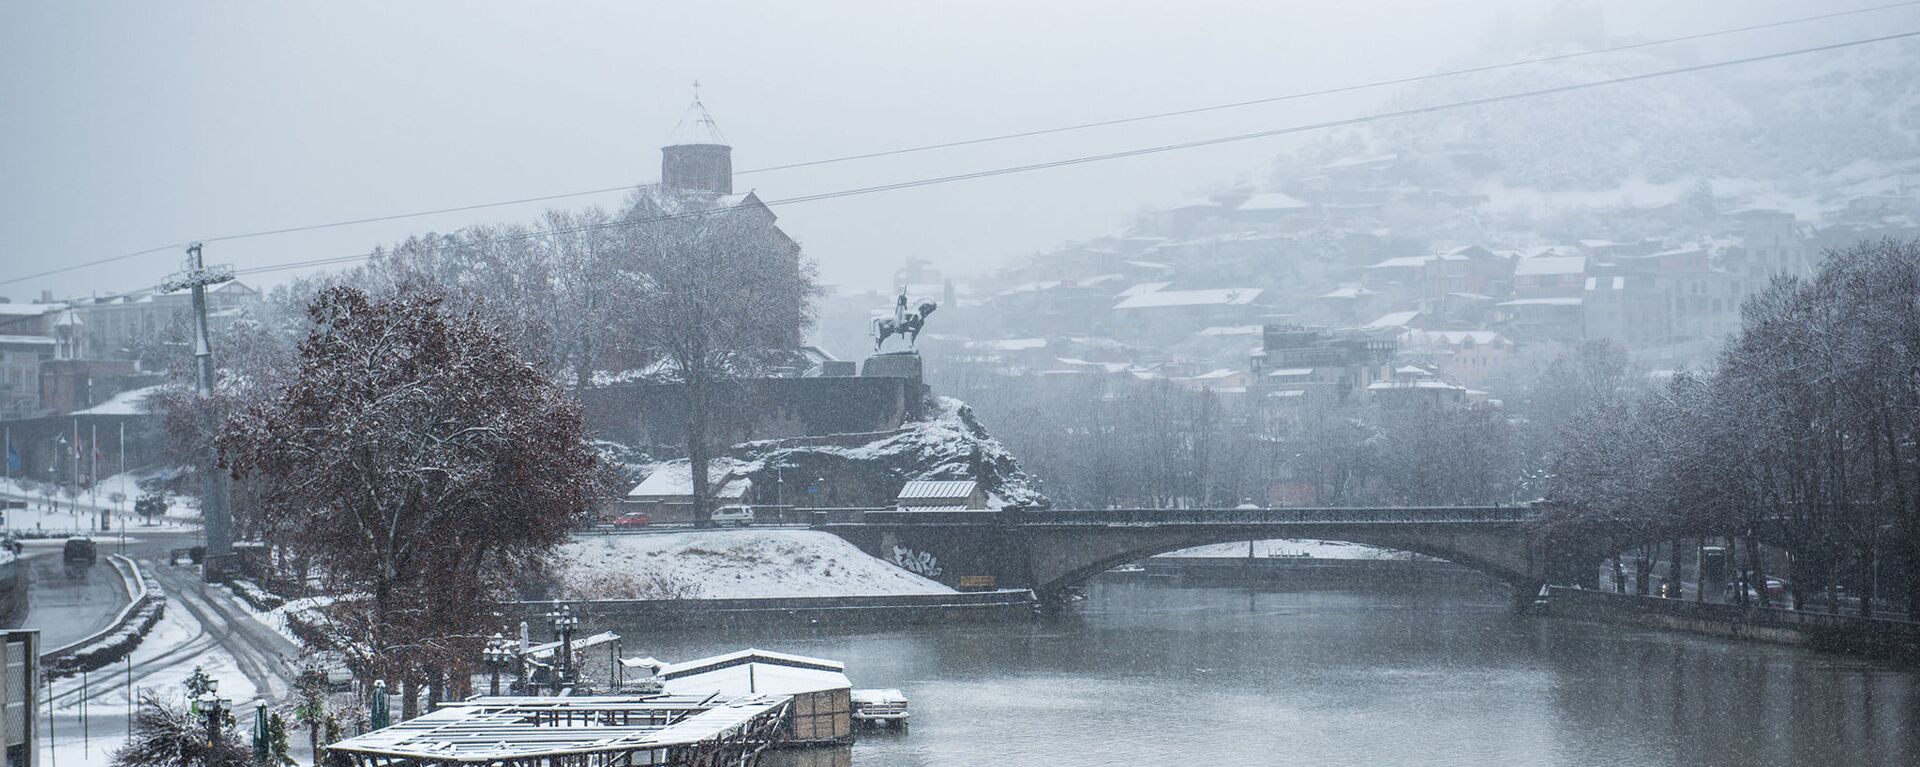 Снегопад и туман в Тбилиси - Метехская церковь и Метехский мост - Sputnik Грузия, 1920, 22.12.2021